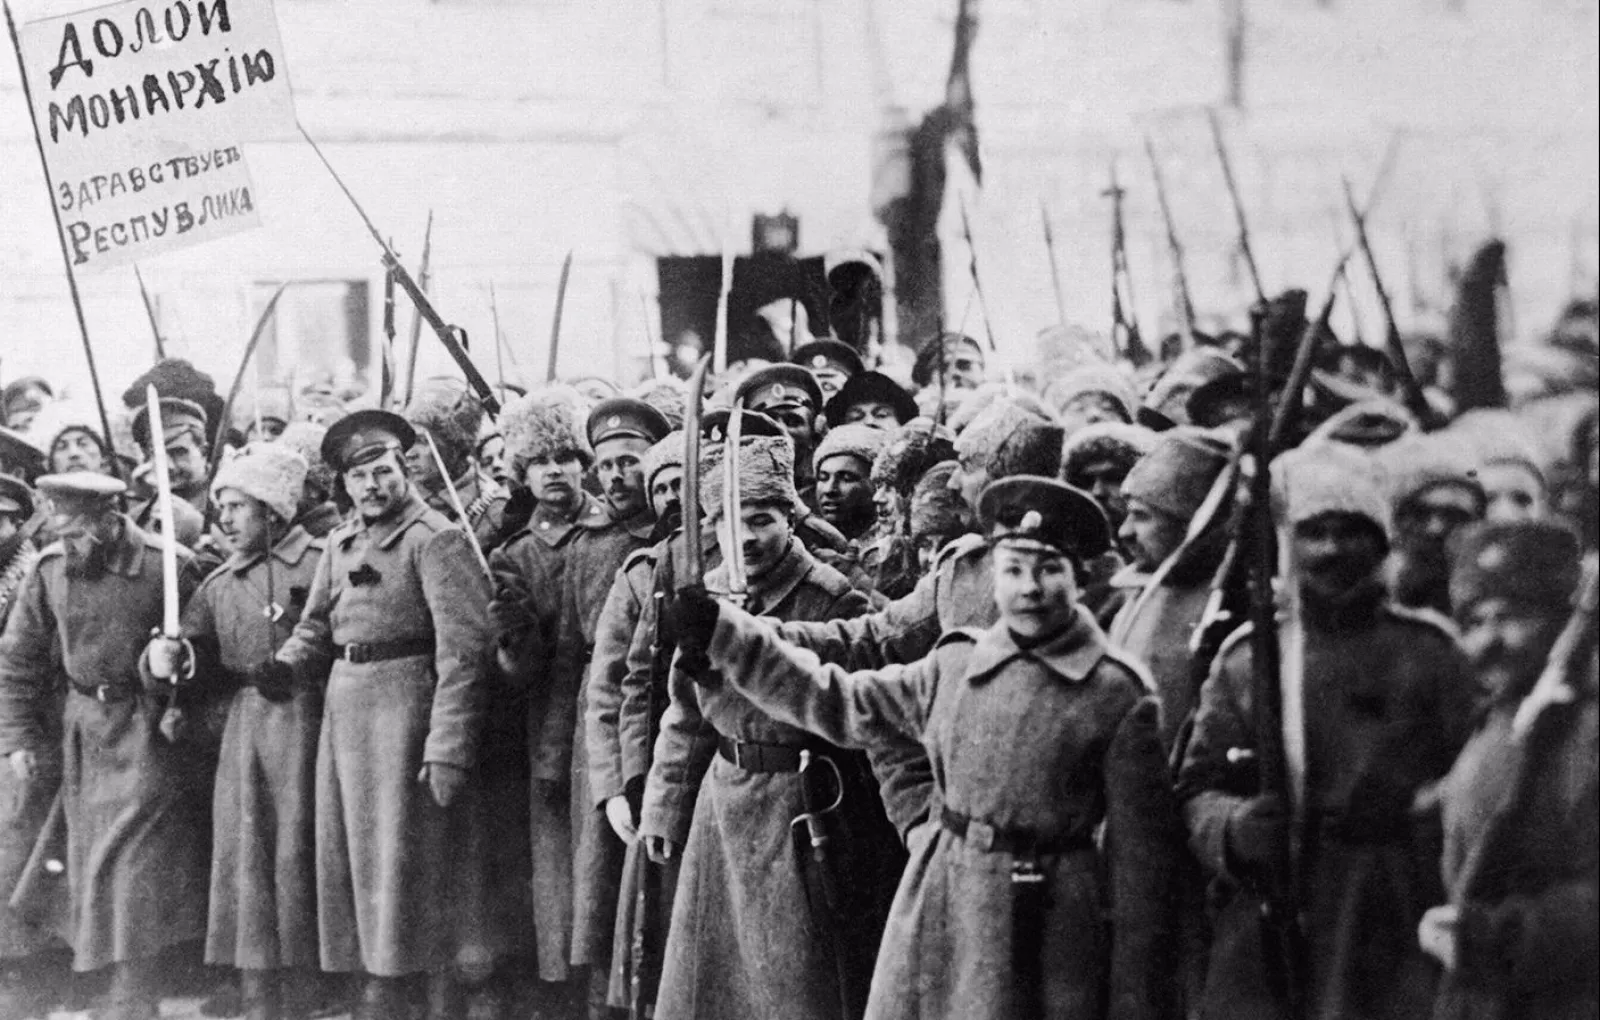 Гражданская революция 1920